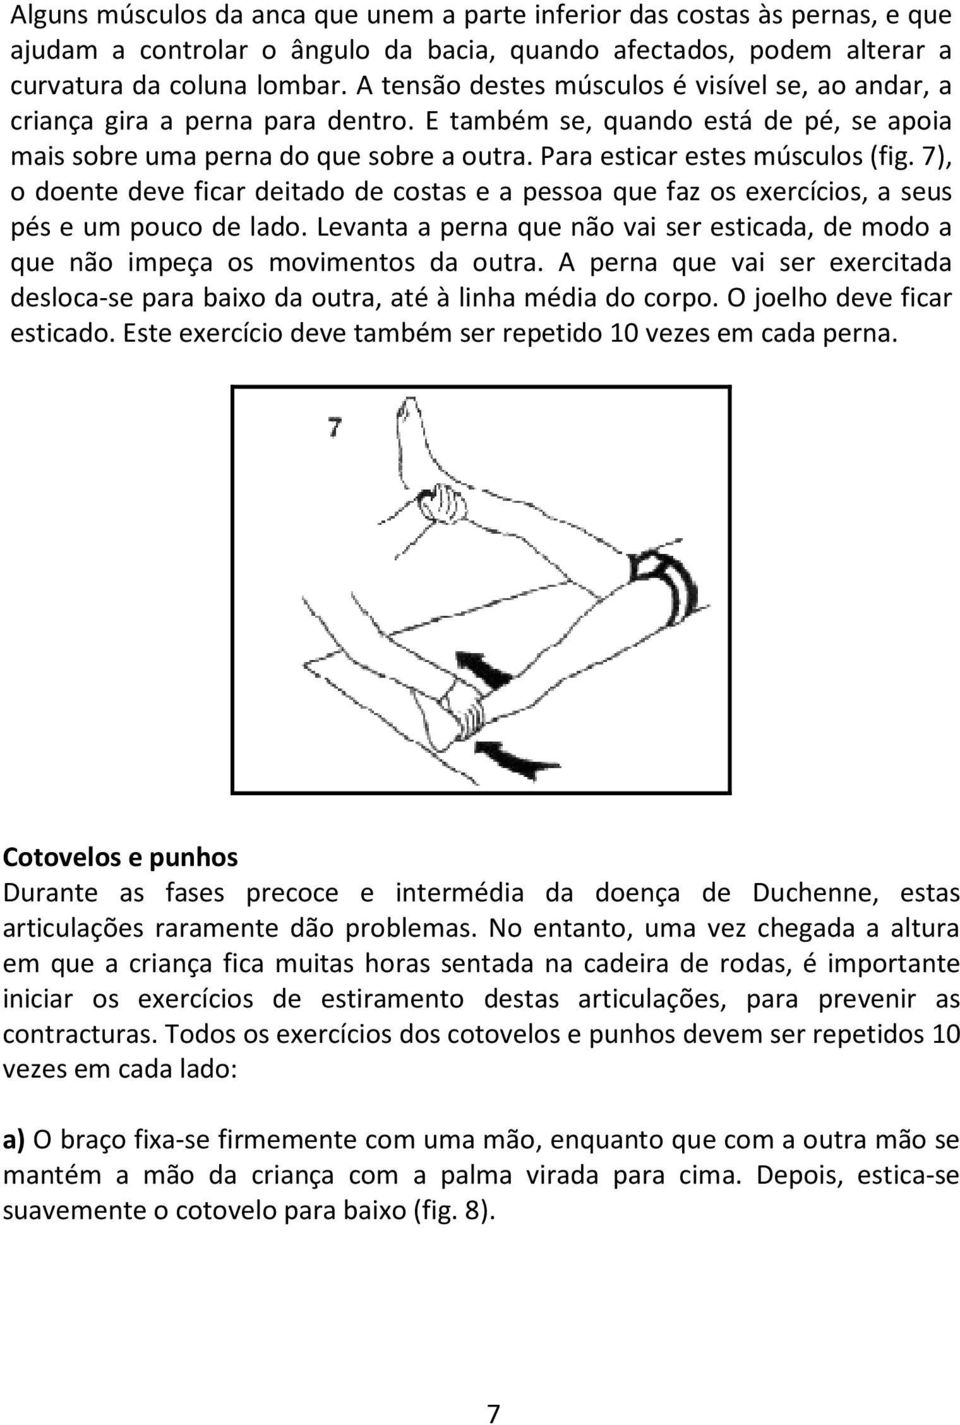 Para esticar estes músculos (fig. 7), o doente deve ficar deitado de costas e a pessoa que faz os exercícios, a seus pés e um pouco de lado.